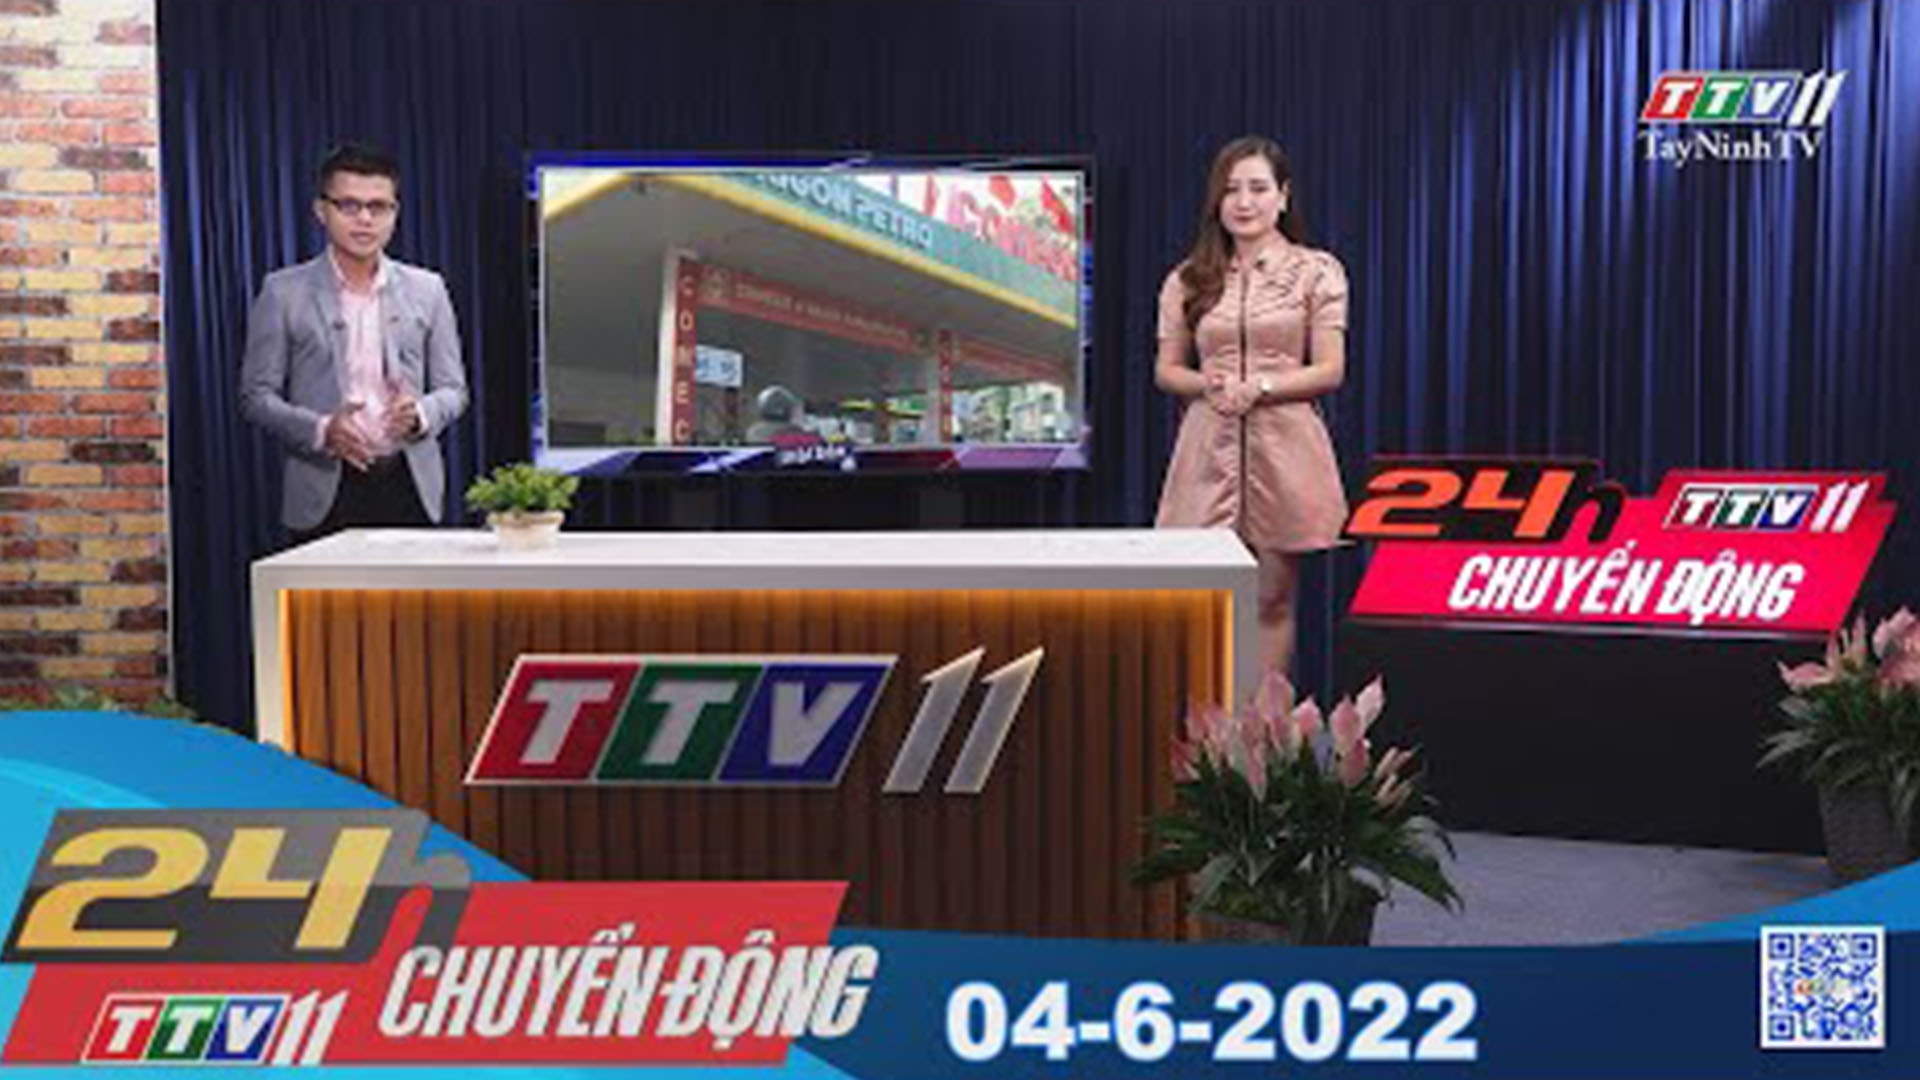 24h Chuyển động 04-6-2022 | Tin tức hôm nay | TayNinhTV